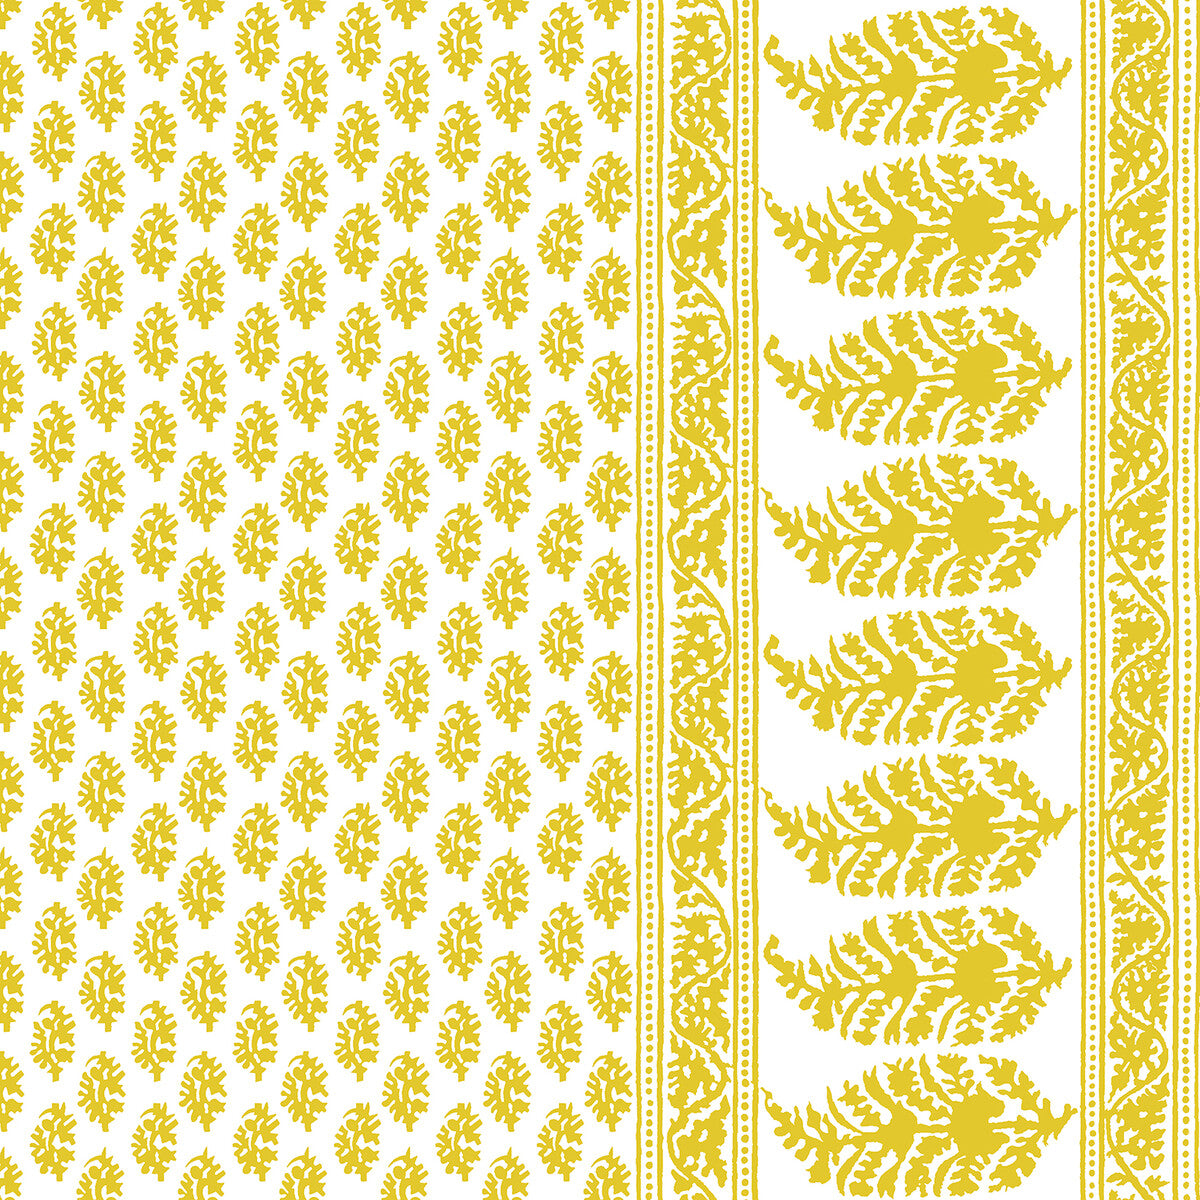 Aravaquita fabric in amarillo color - pattern LCT1028.004.0 - by Gaston y Daniela in the Lorenzo Castillo V collection